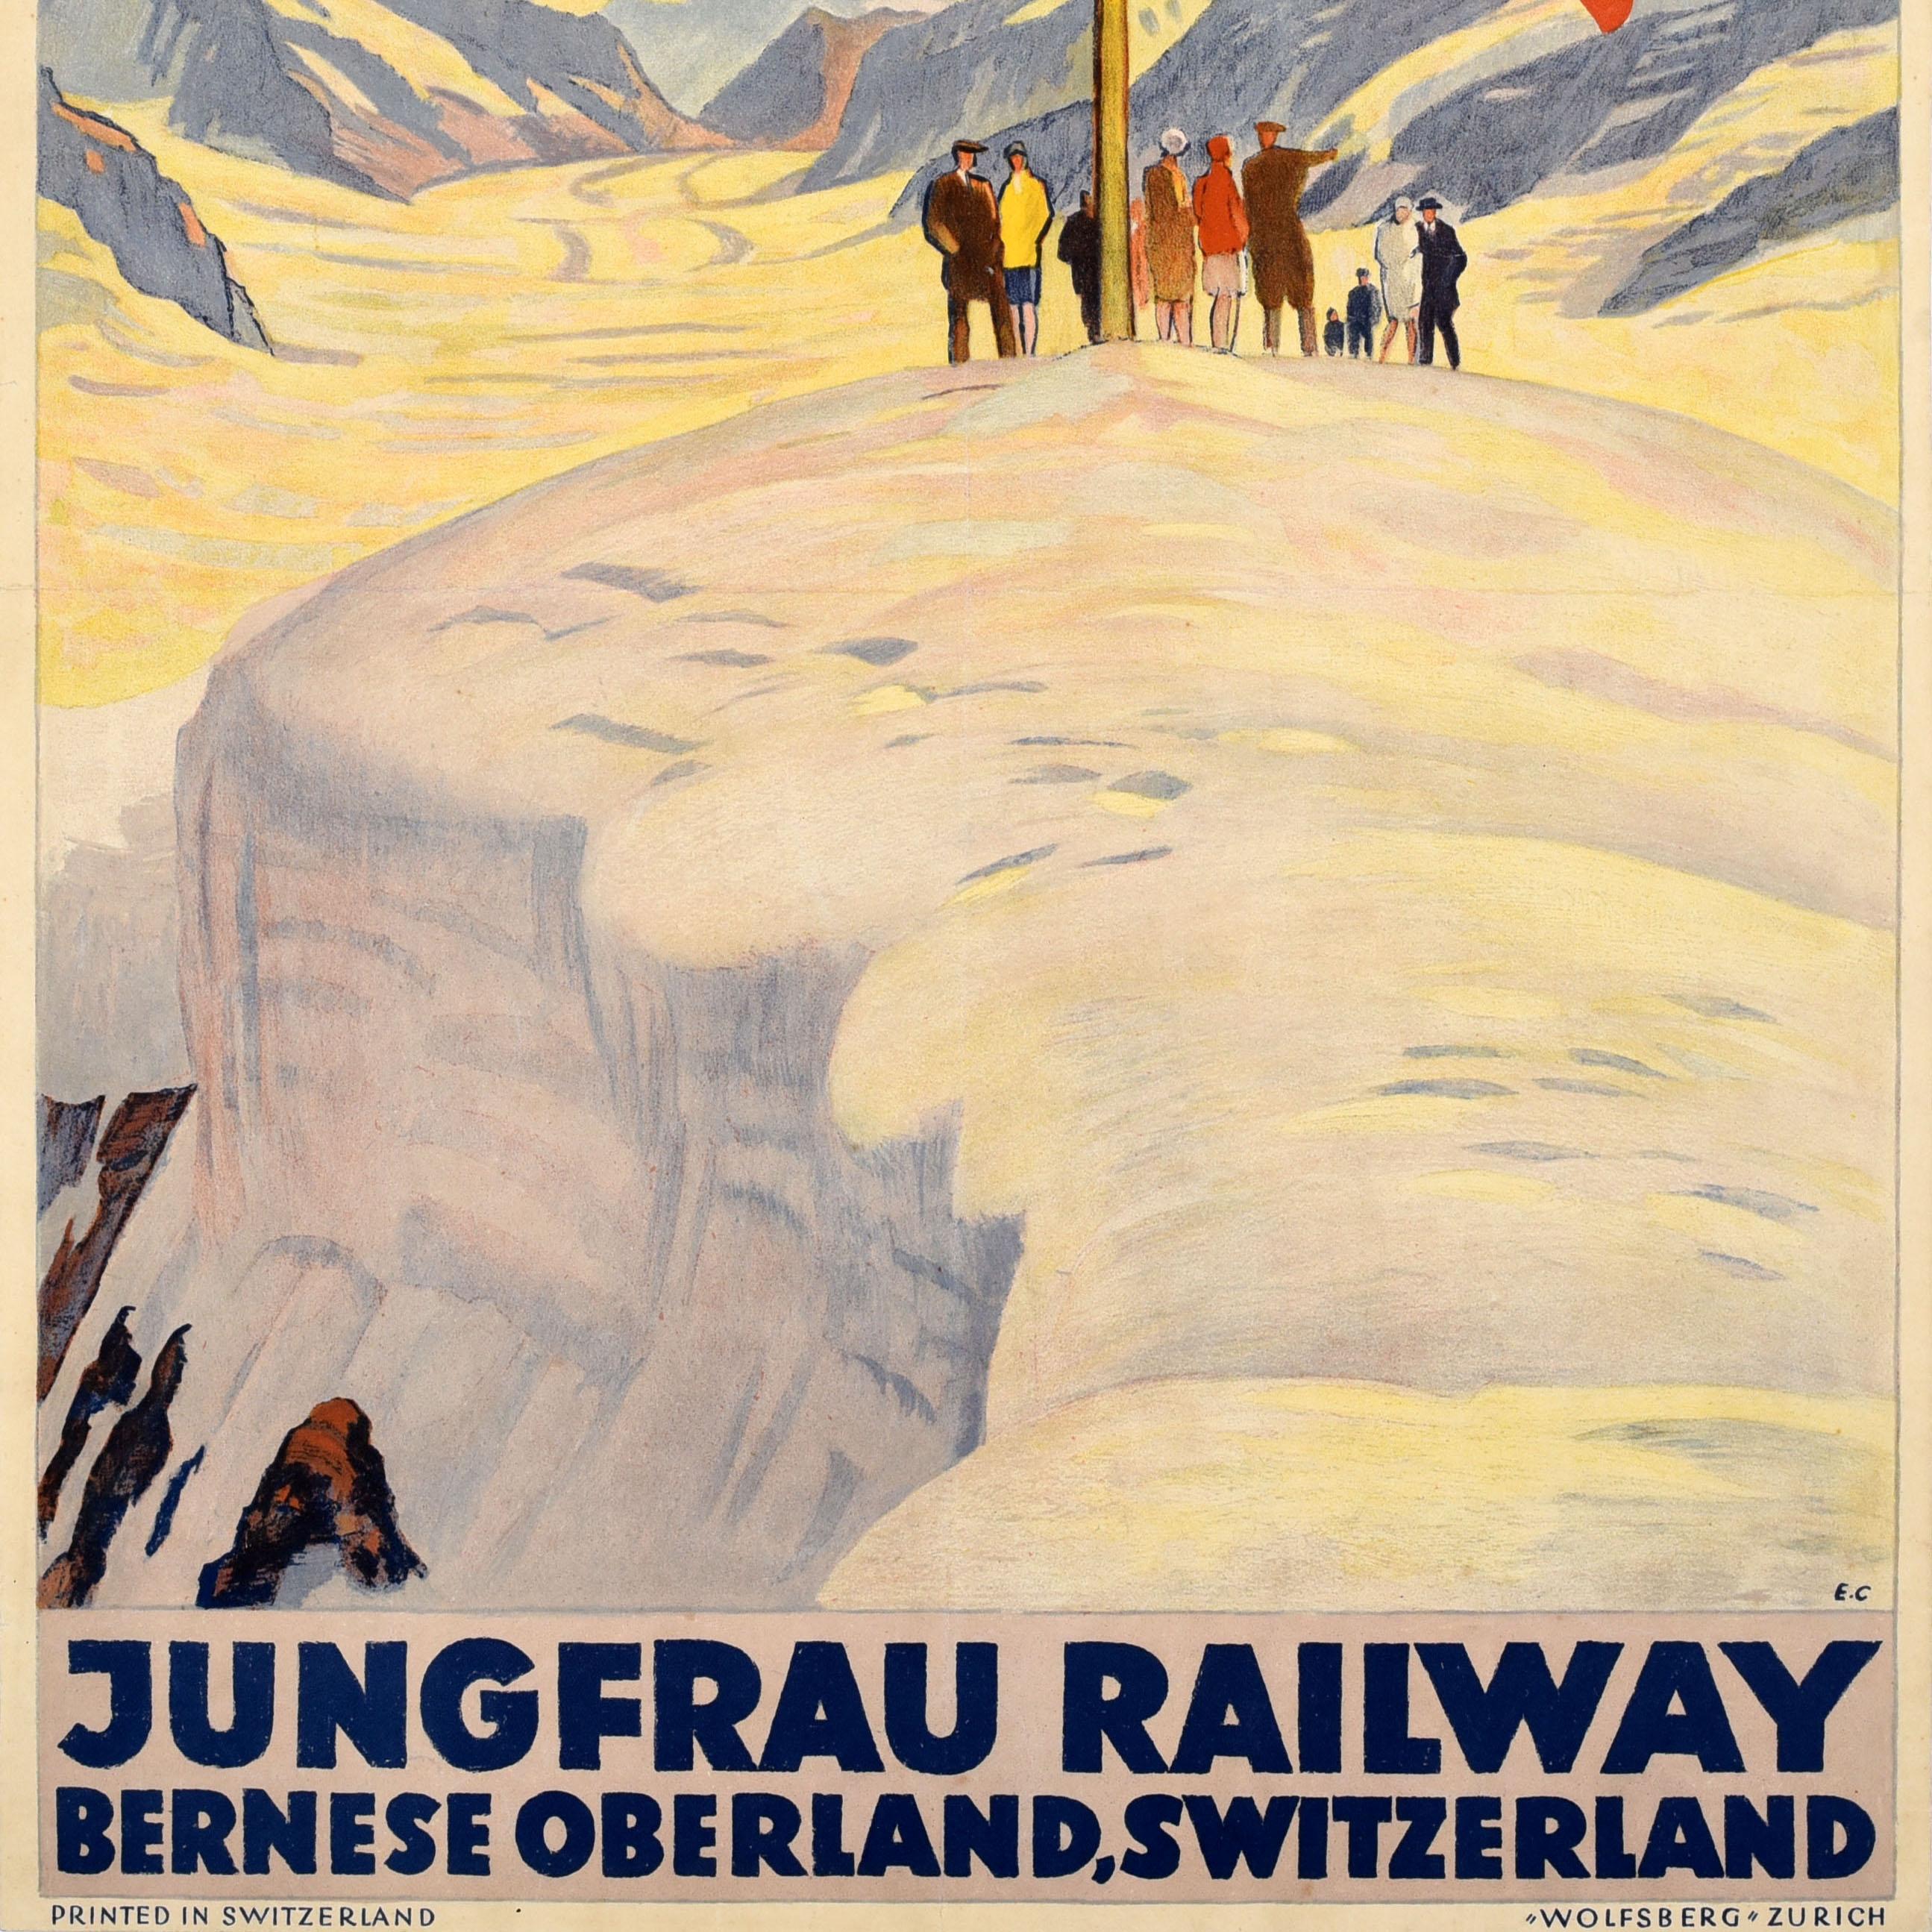 Originales antikes Winterreiseplakat für die Jungfraubahn Berner Oberland Schweiz mit einem großartigen Kunstwerk von Emil Cardineaux (1877-1936), das eine Gruppe von Menschen auf einem schneebedeckten Berg unter der Schweizer Flagge mit einem Tal